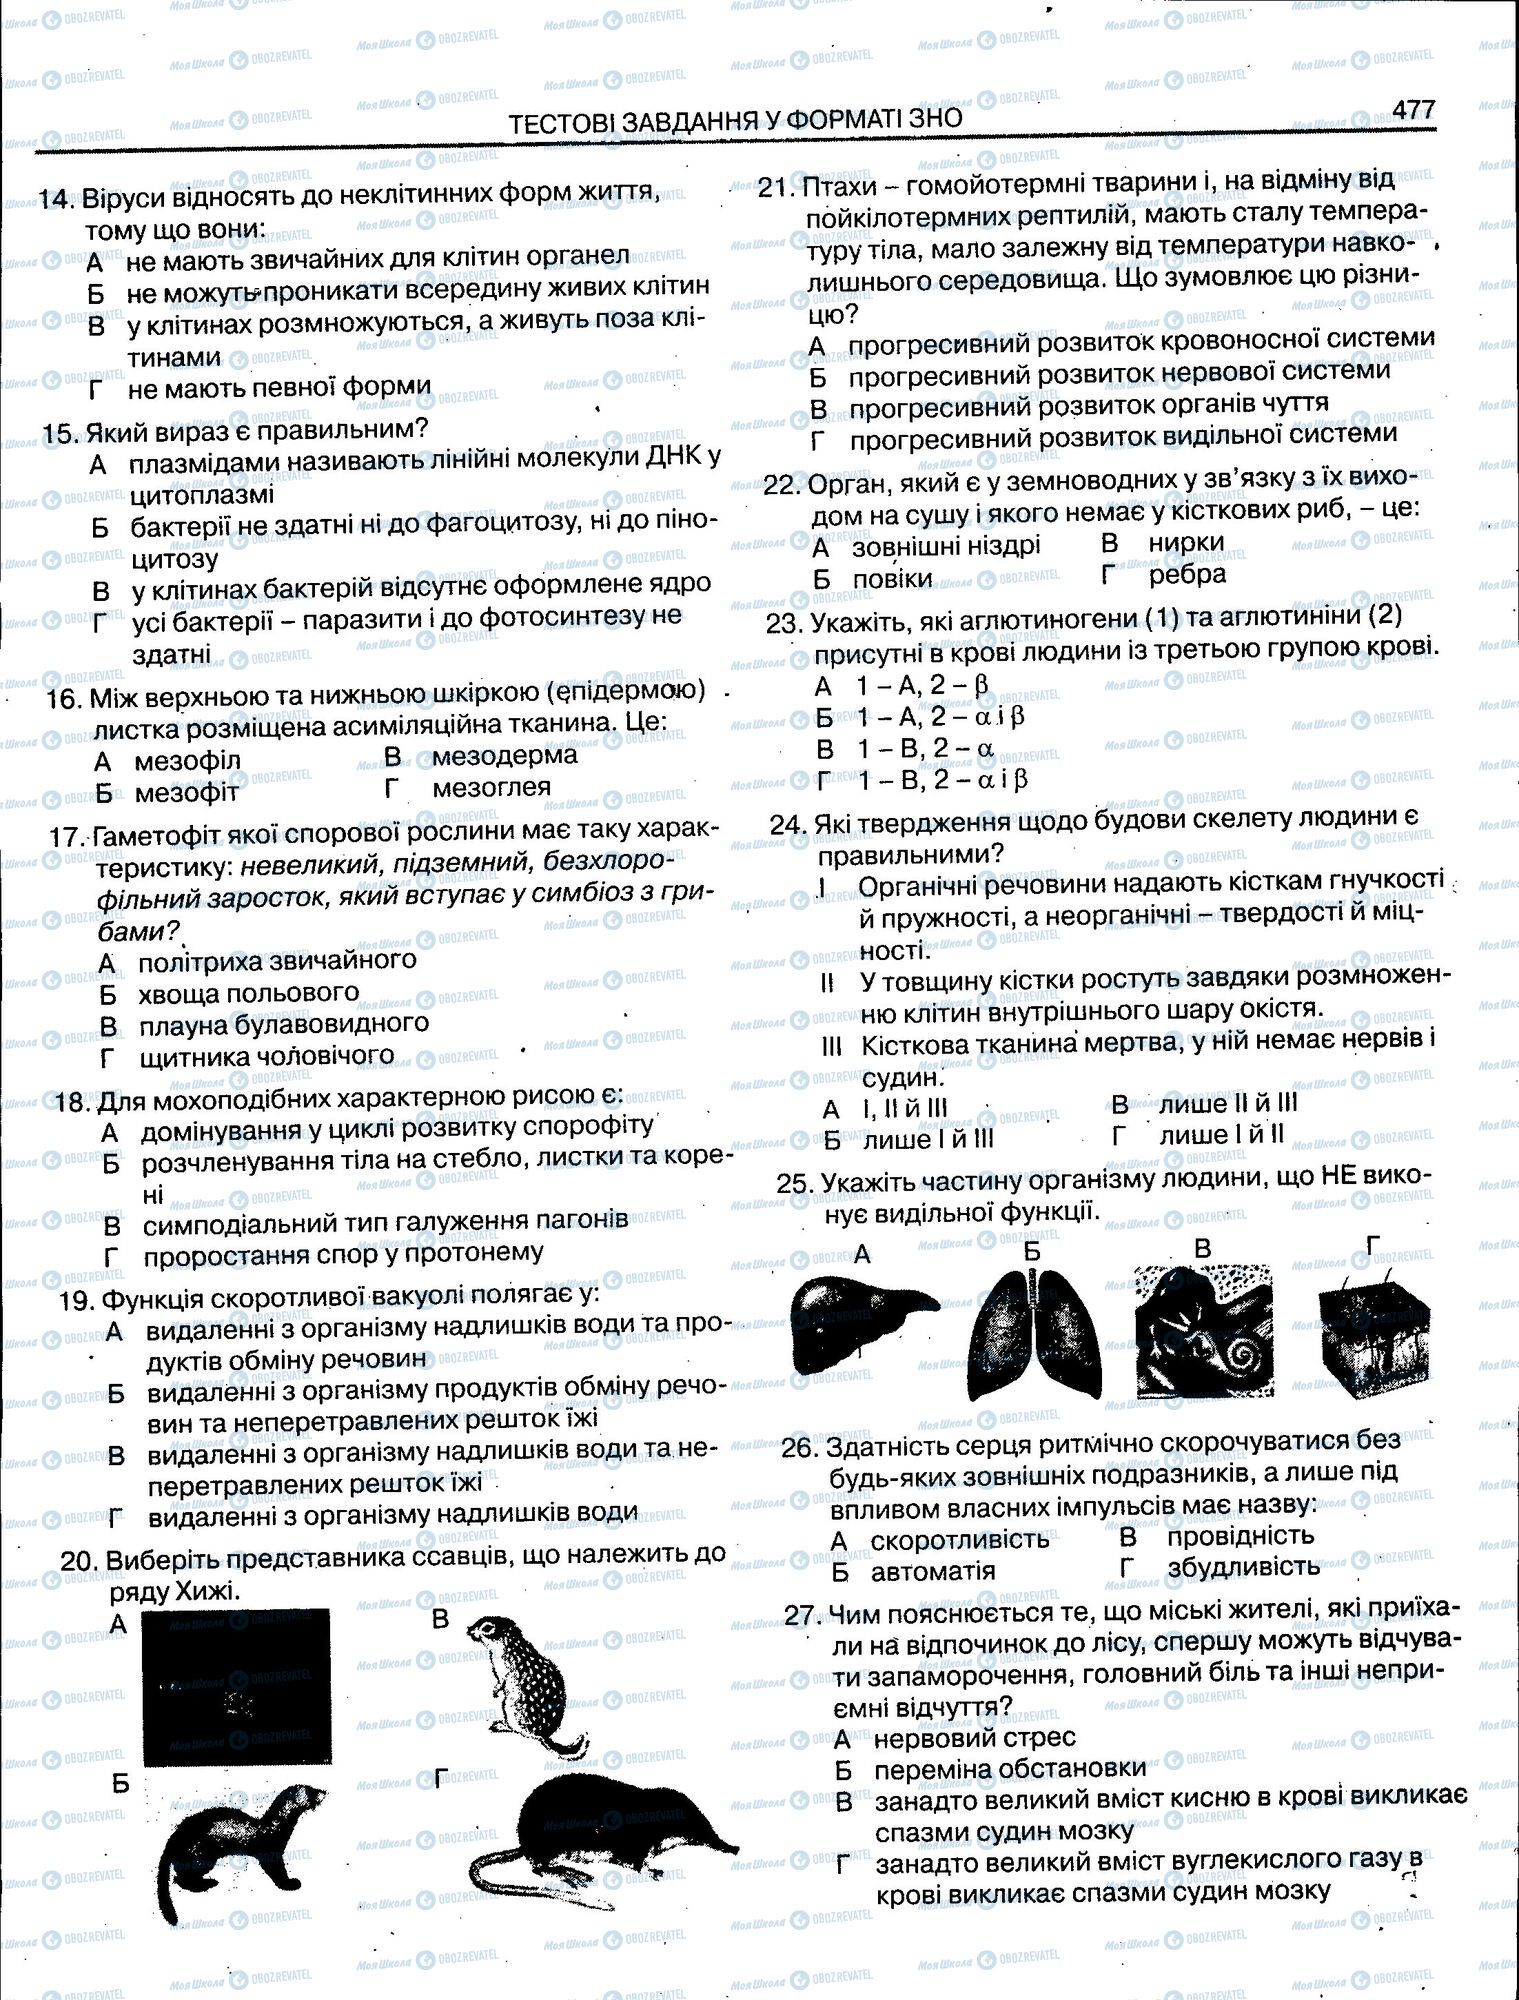 ЗНО Биология 11 класс страница 477